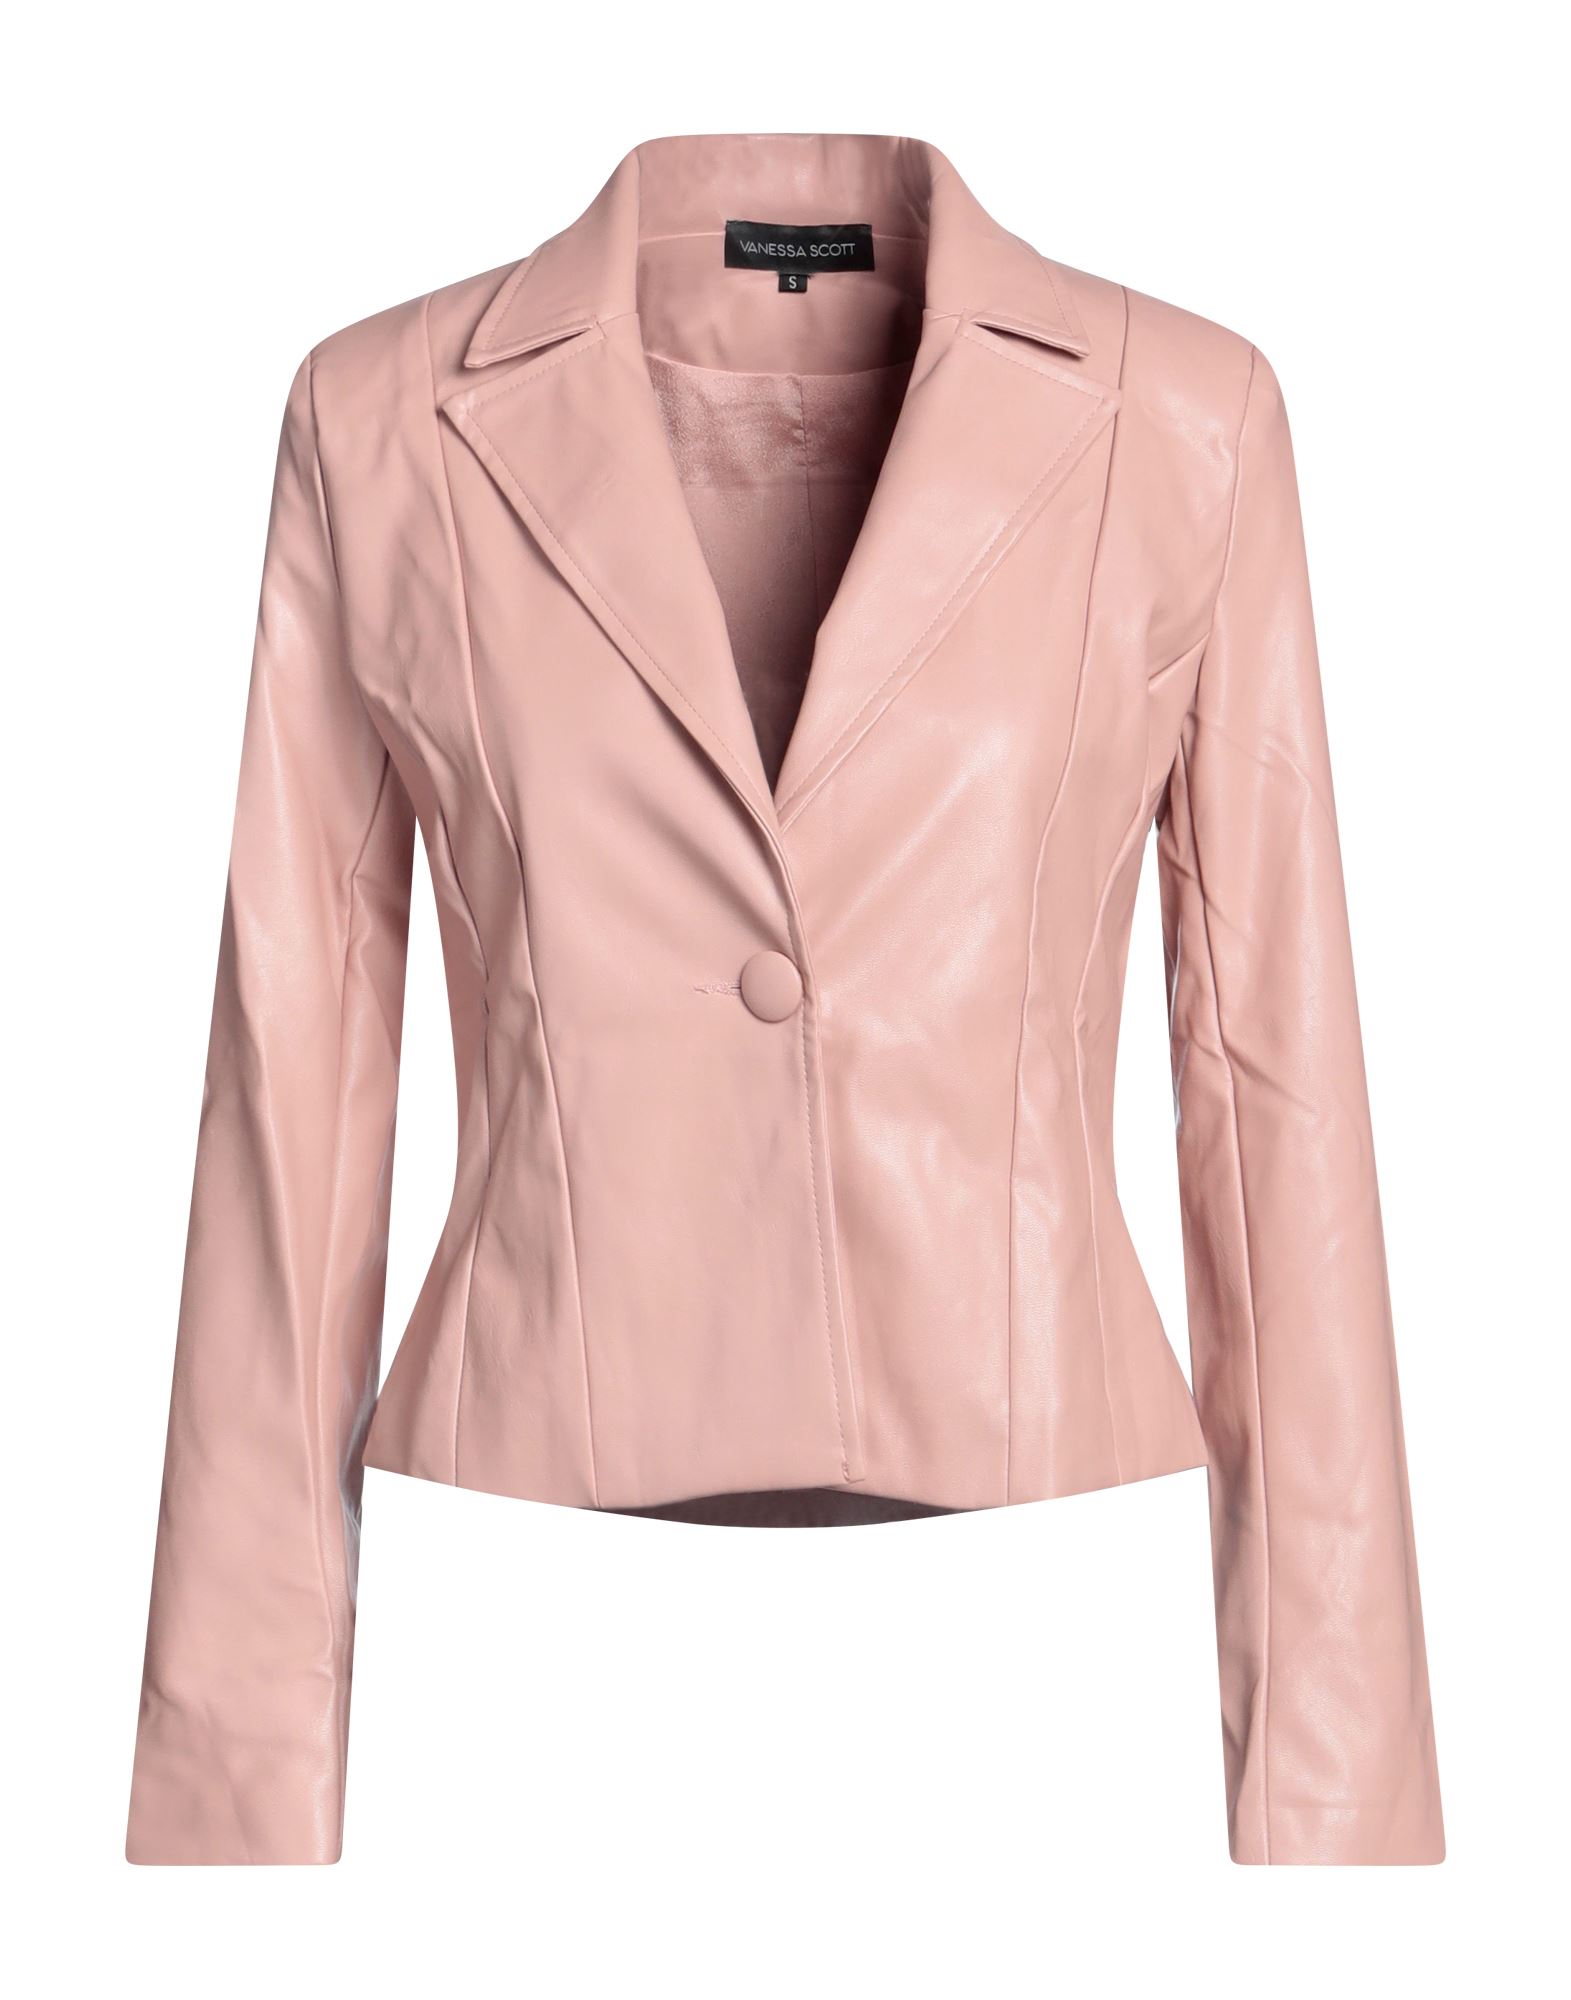 Vanessa Scott Suit Jackets In Pink